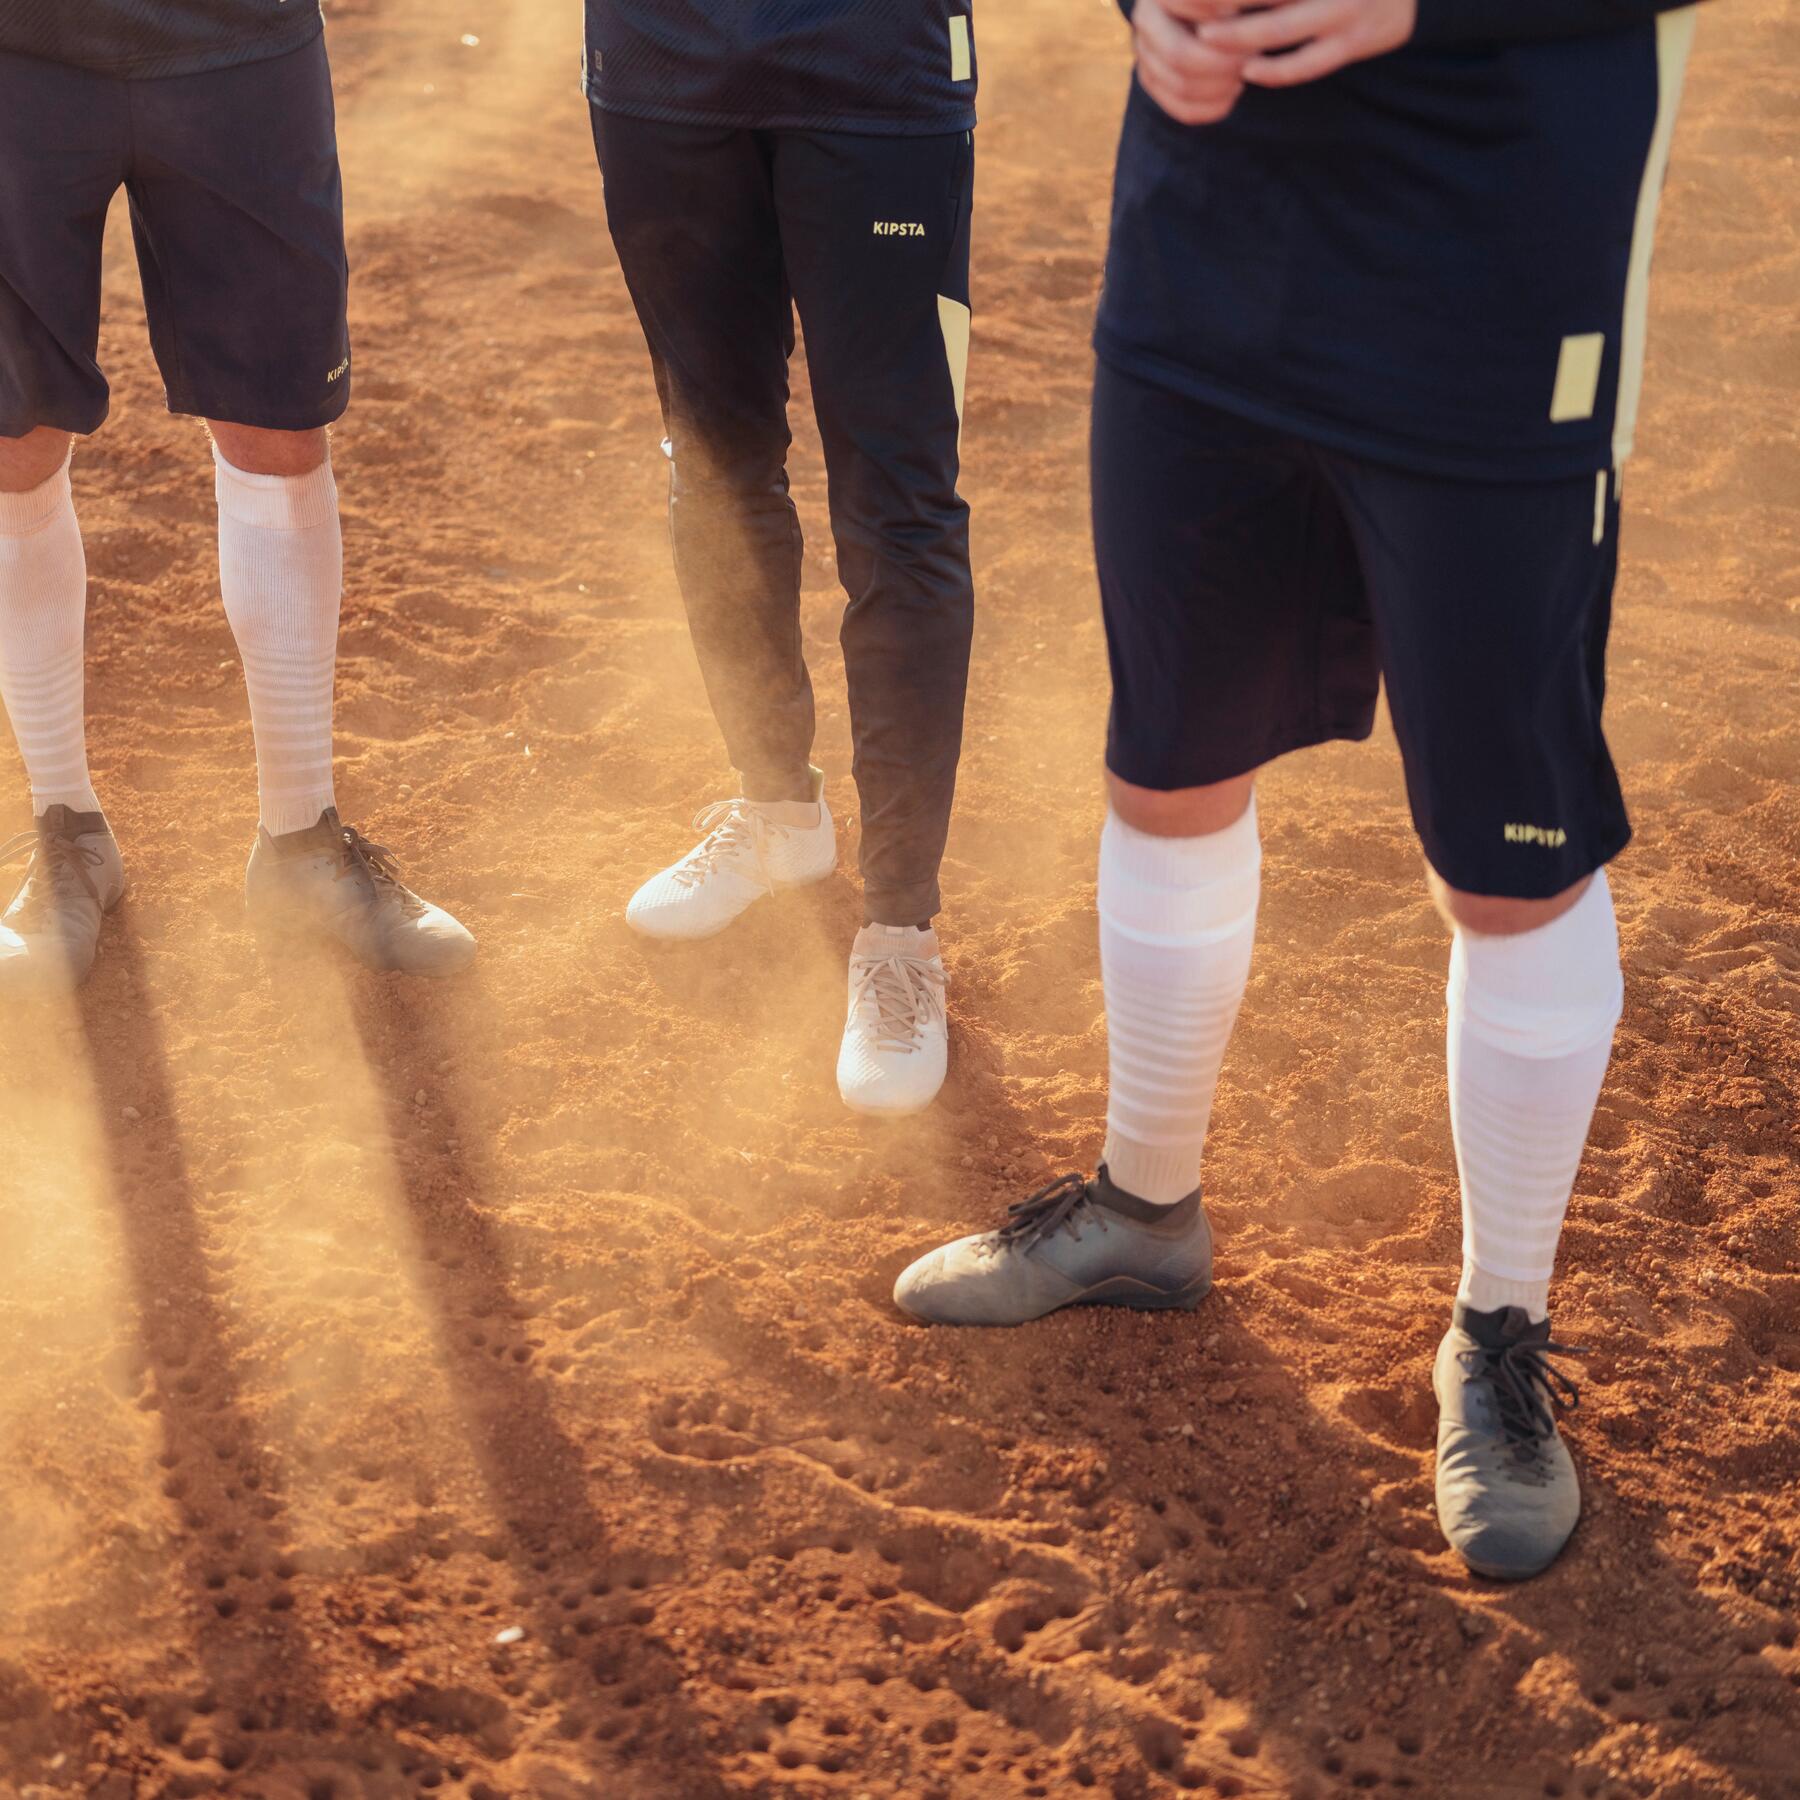 Piłkarze stojący na ceglastym podłożu w butach i odzieży piłkarskiej